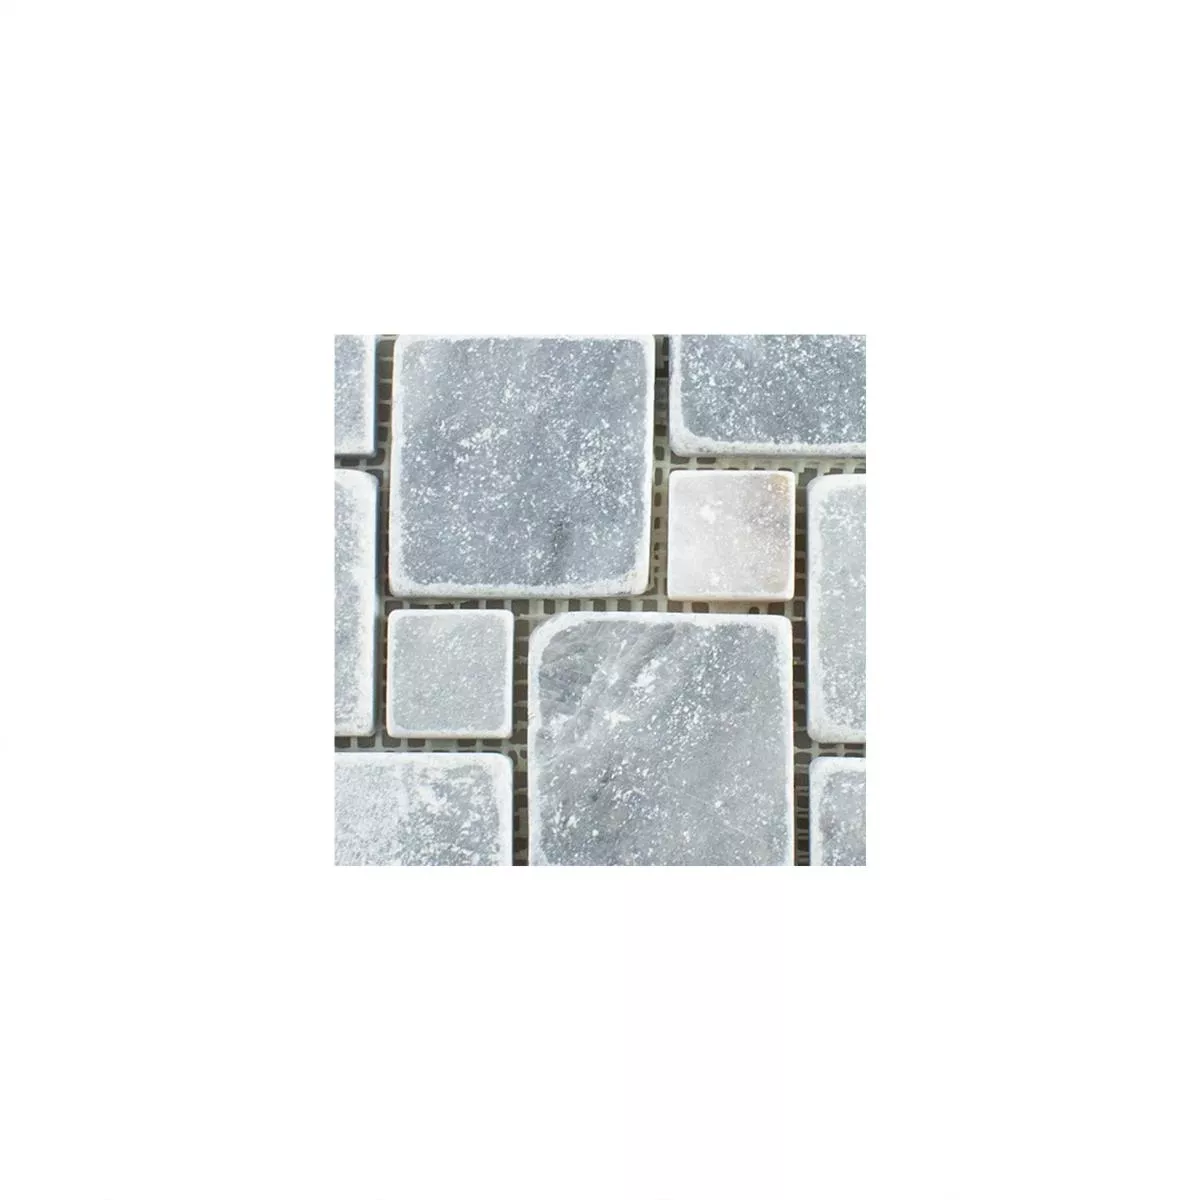 Prov Natursten Marmor Mosaik Kilkenny Ljusgrå